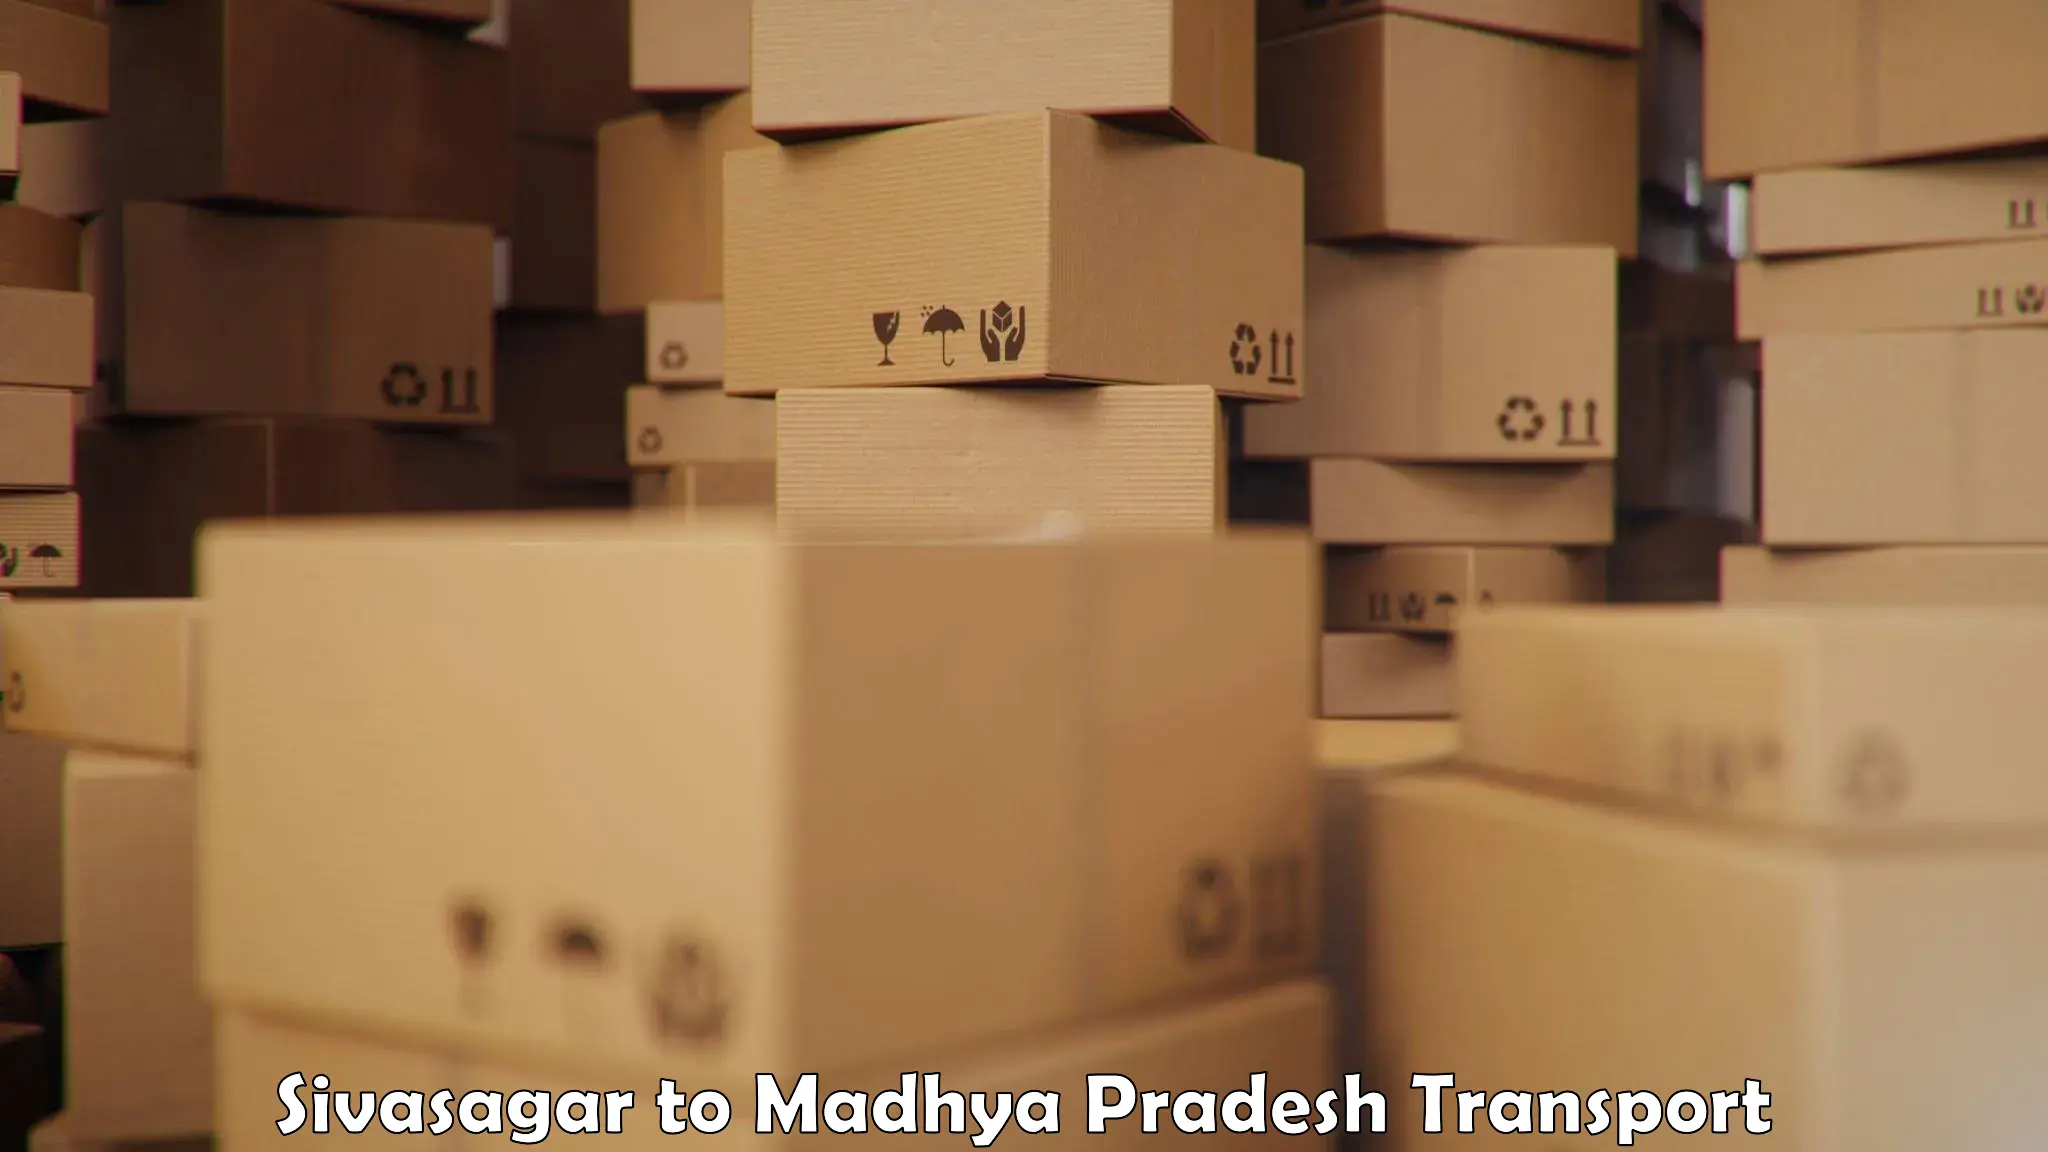 Material transport services Sivasagar to Vijayraghavgarh